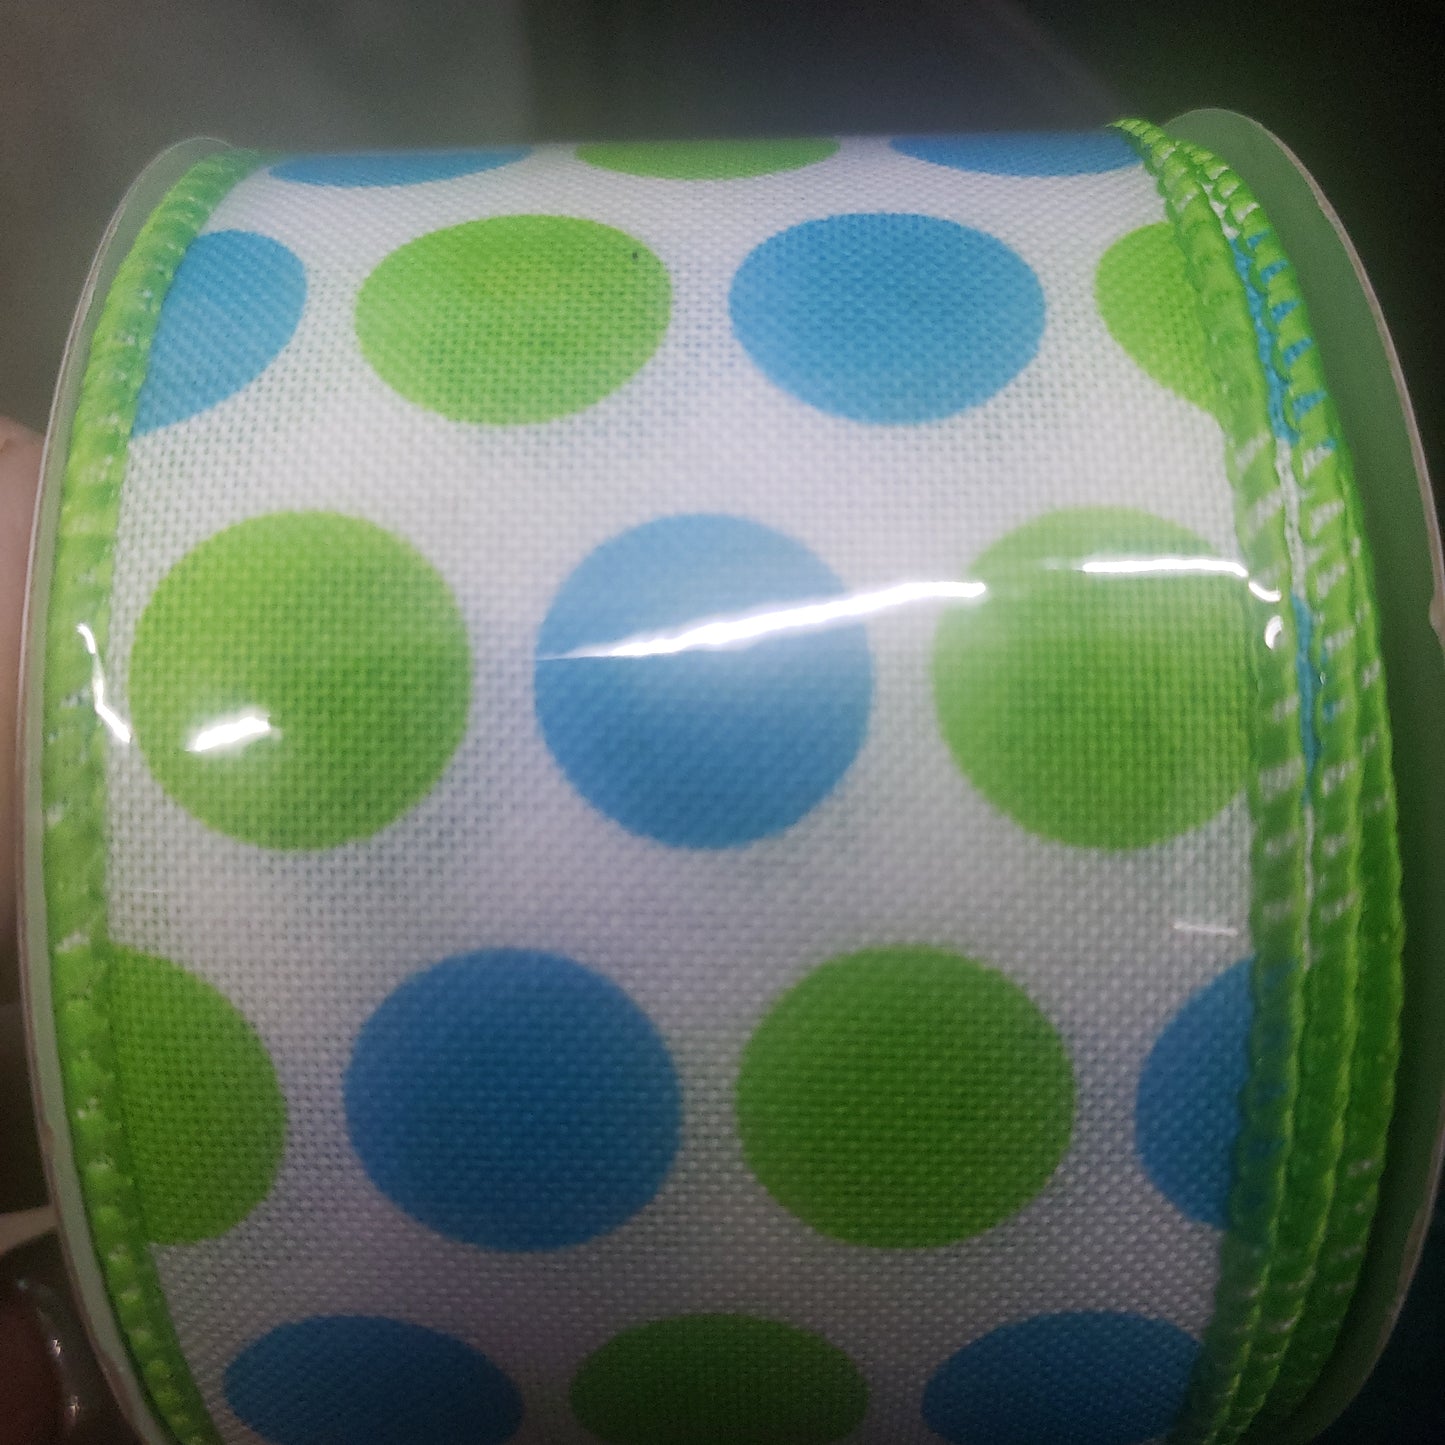 2.5" x 10 yard green and blue polka dot ribbon